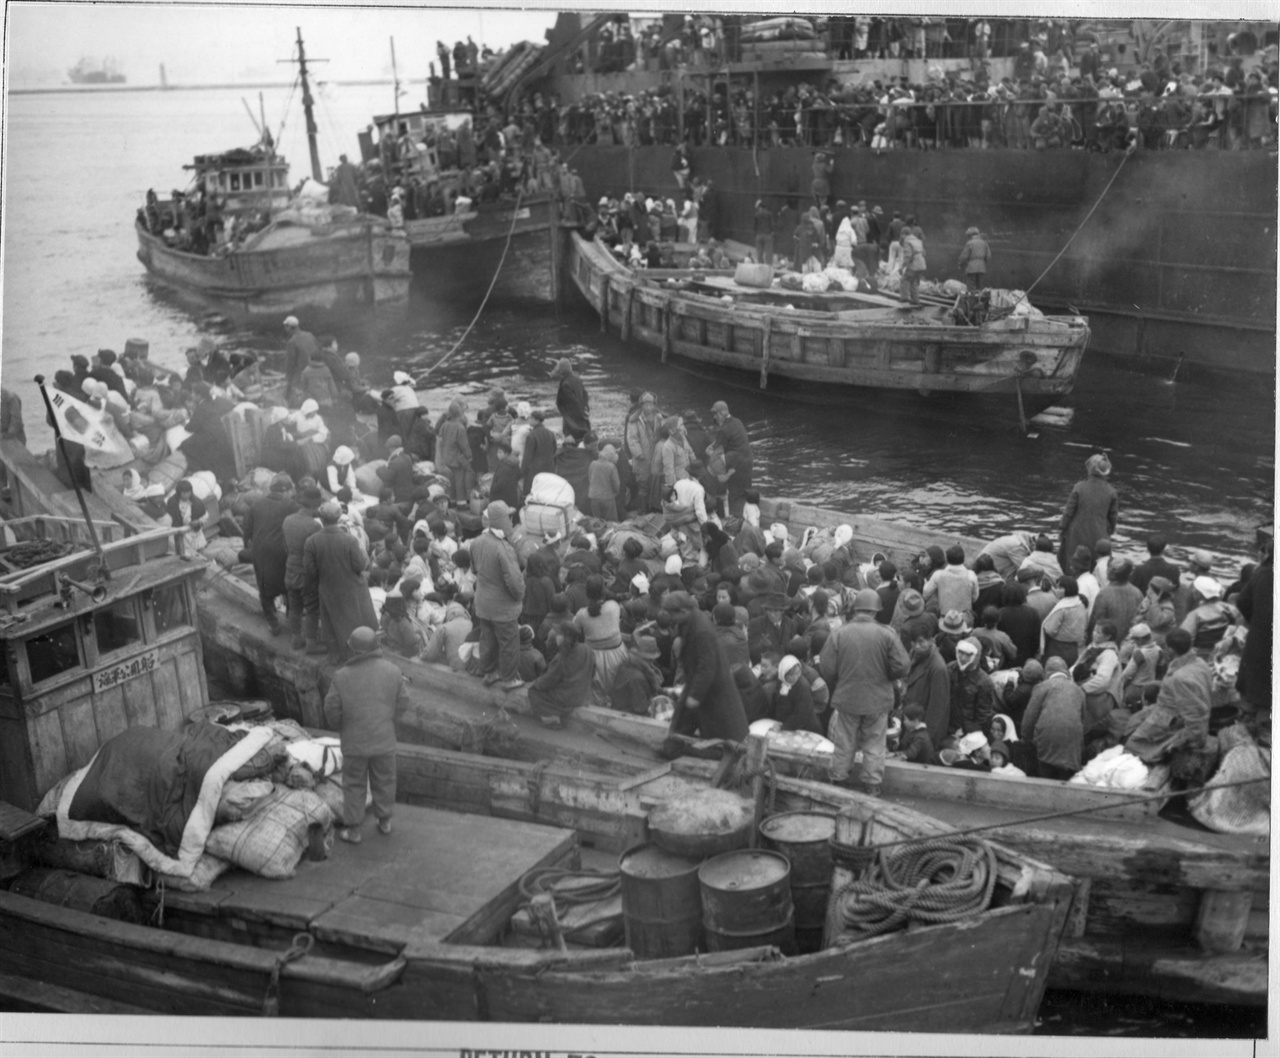  1950. 12. 19. 피란민들이 흥남 항에 정박 중인 피란민 수송선에 타고자 목선을 타고 접근하고 있다. 